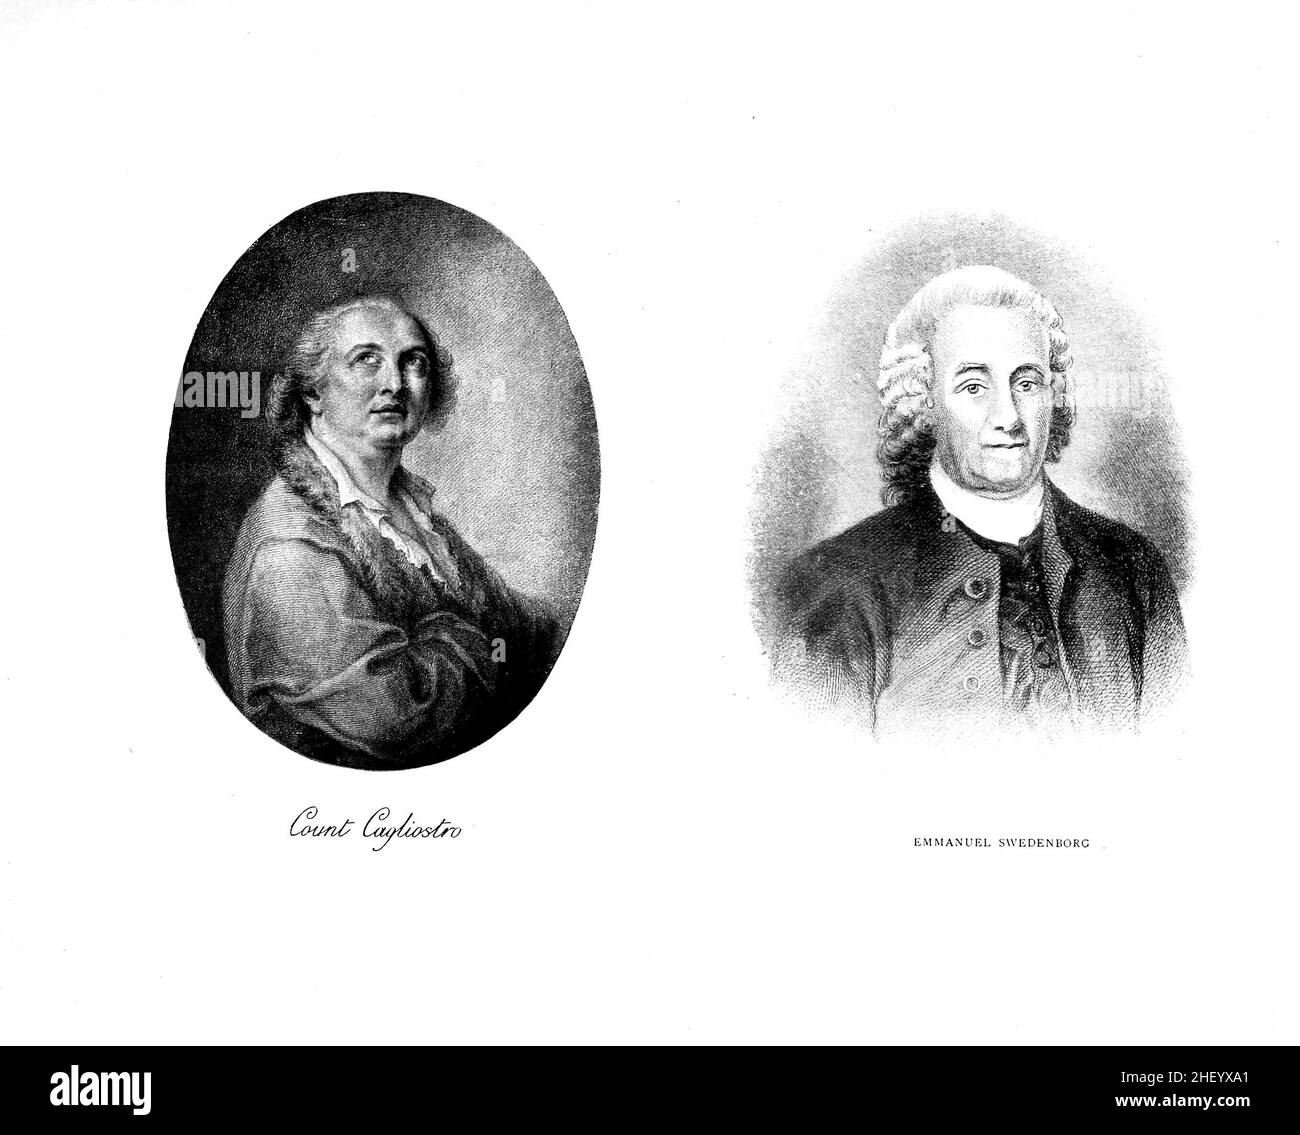 Comte Cagliostro [à gauche] Emmanuel Swedenborg (Emanuel Swedenborg) [à droite] le Comte Alessandro di Cagliostro (2 juin 1743 – 26 août 1795) est l'alias de l'occultiste Giuseppe Balsamo en français, habituellement appelé Joseph Balsamo.Emanuel Swedenborg (né Emanuel Swedberg, du 8 février 1688 au 29 mars 1772) est un théologien, scientifique, philosophe et mystique suédois pluraliste-chrétien.Il est devenu plus connu pour son livre sur l'après-vie, le ciel et l'Enfer (1758). D'une encyclopédie de l'occultisme : un recueil d'informations sur les sciences occultes, les personnalités occultes, la science psychique, la magie Banque D'Images